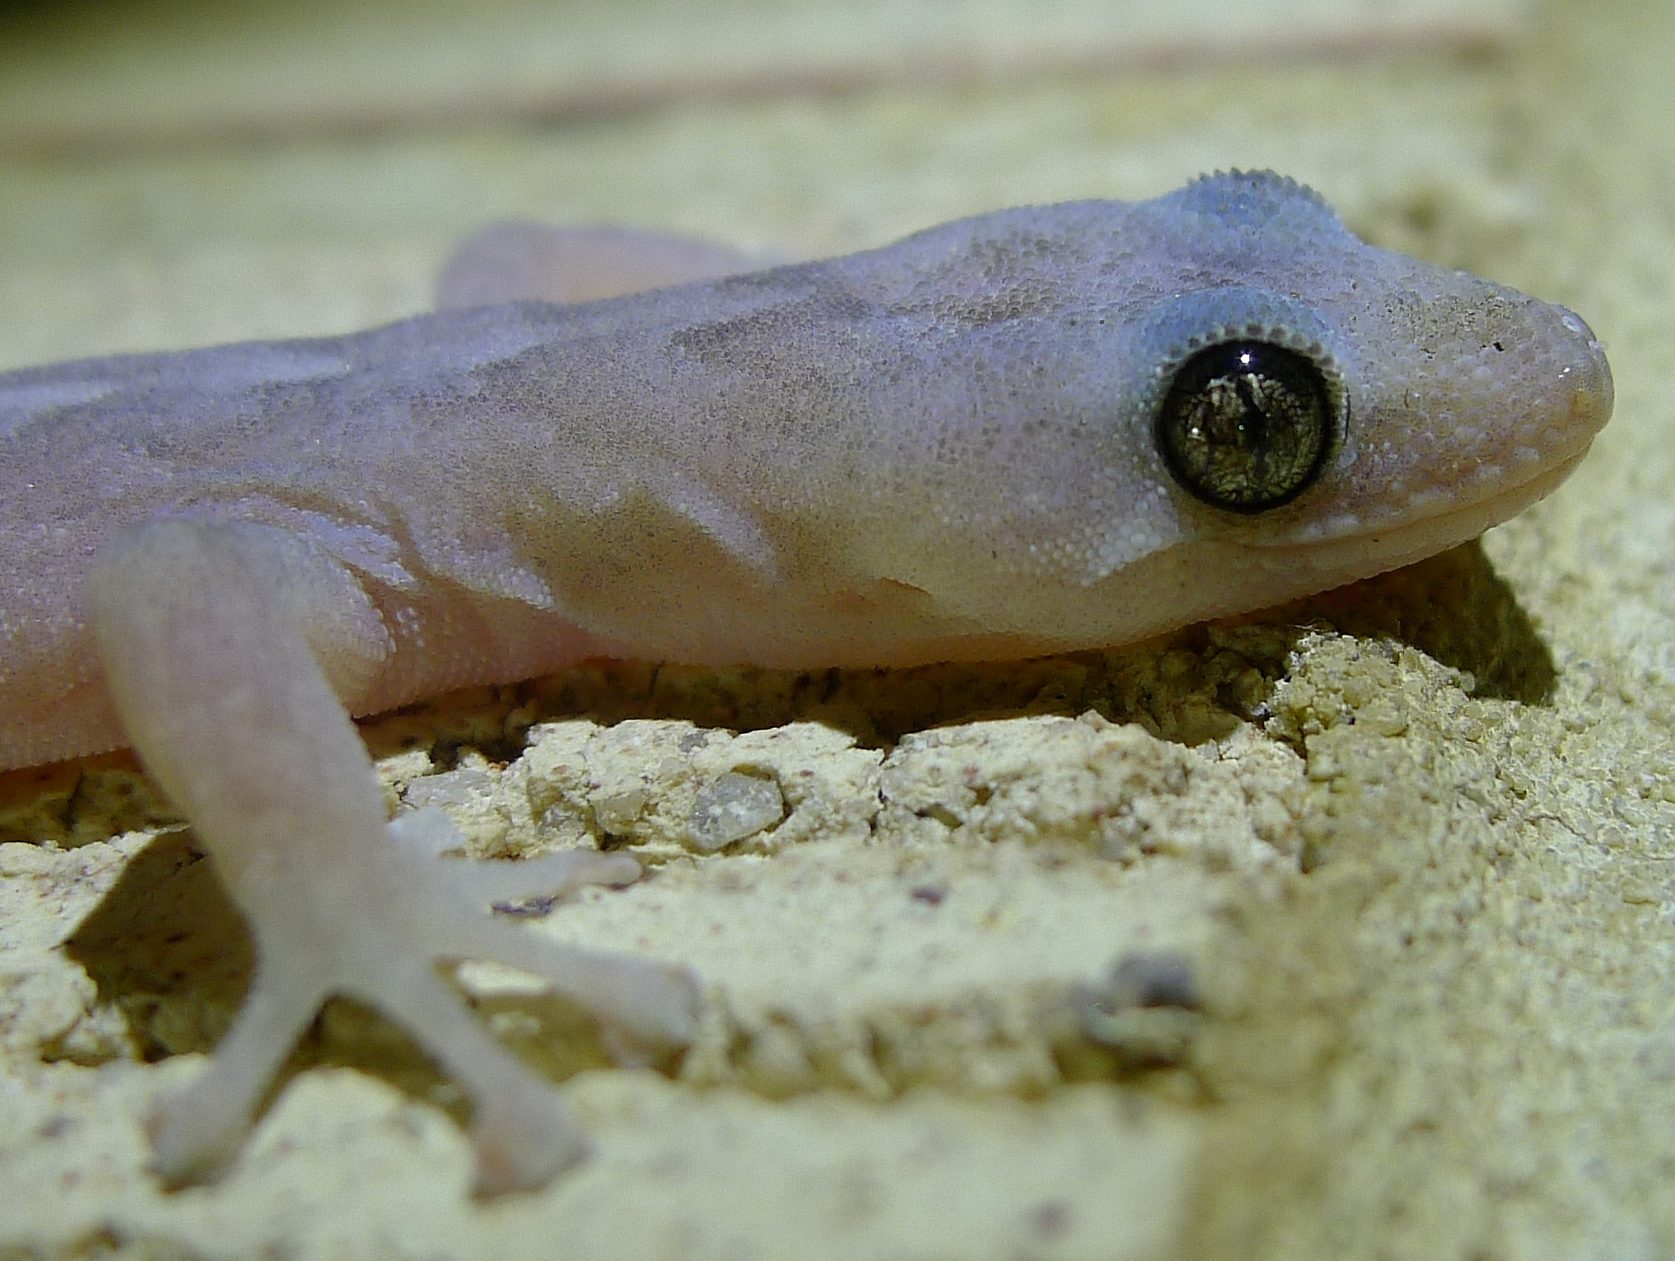 A close up of a white gecko